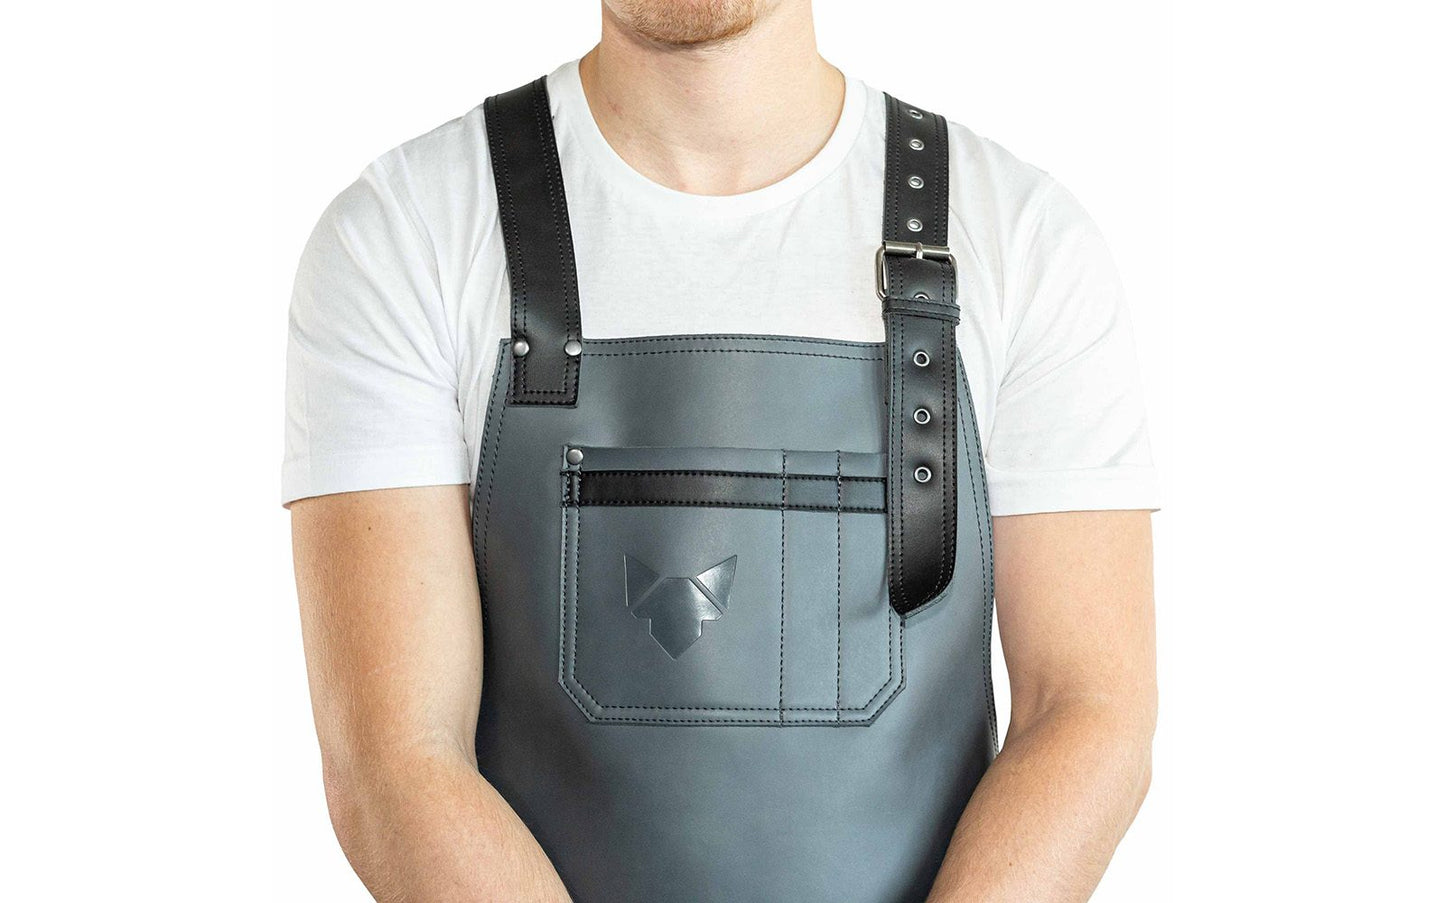 Brustbereich Leder-Grillschürze mit geprägtem FENNEK-Logo und mit verstellbarem Lederriemen, Schnalle und aufgesetzten Taschen, getragen von einem Mann